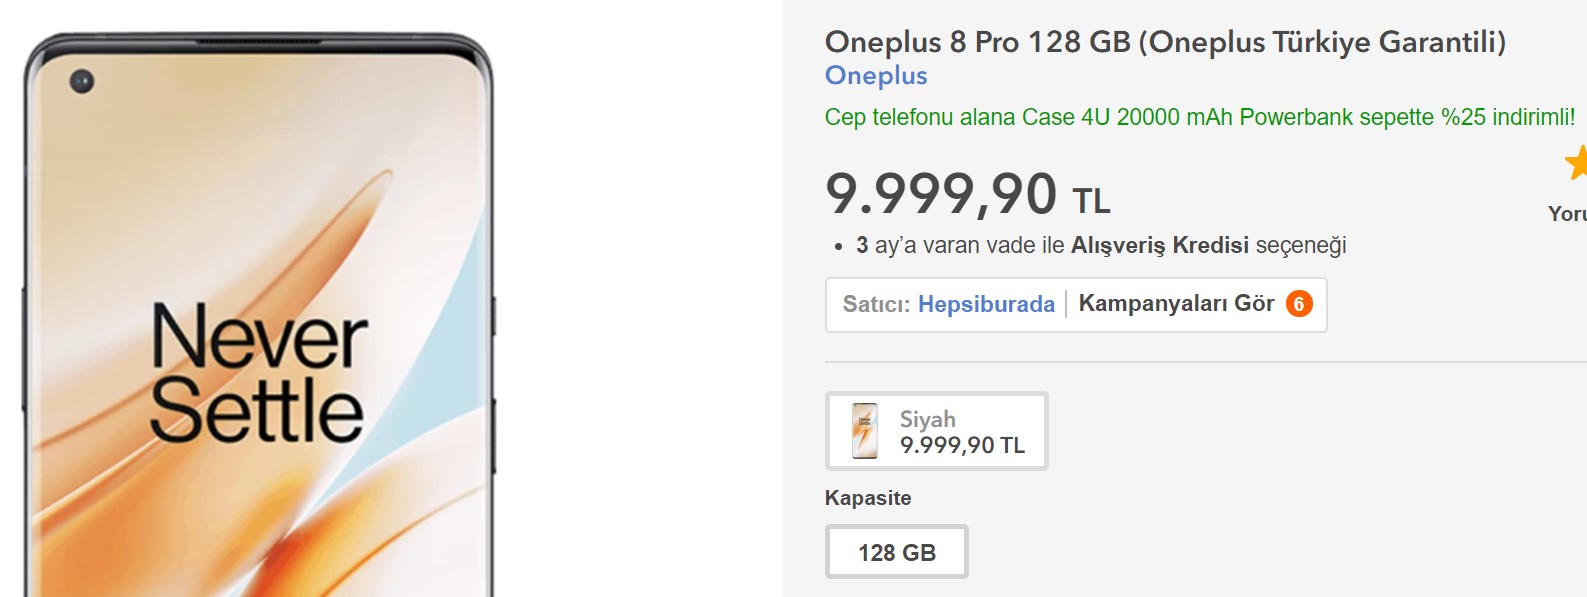 OnePlus 8 Pro ücreti belli oldu!